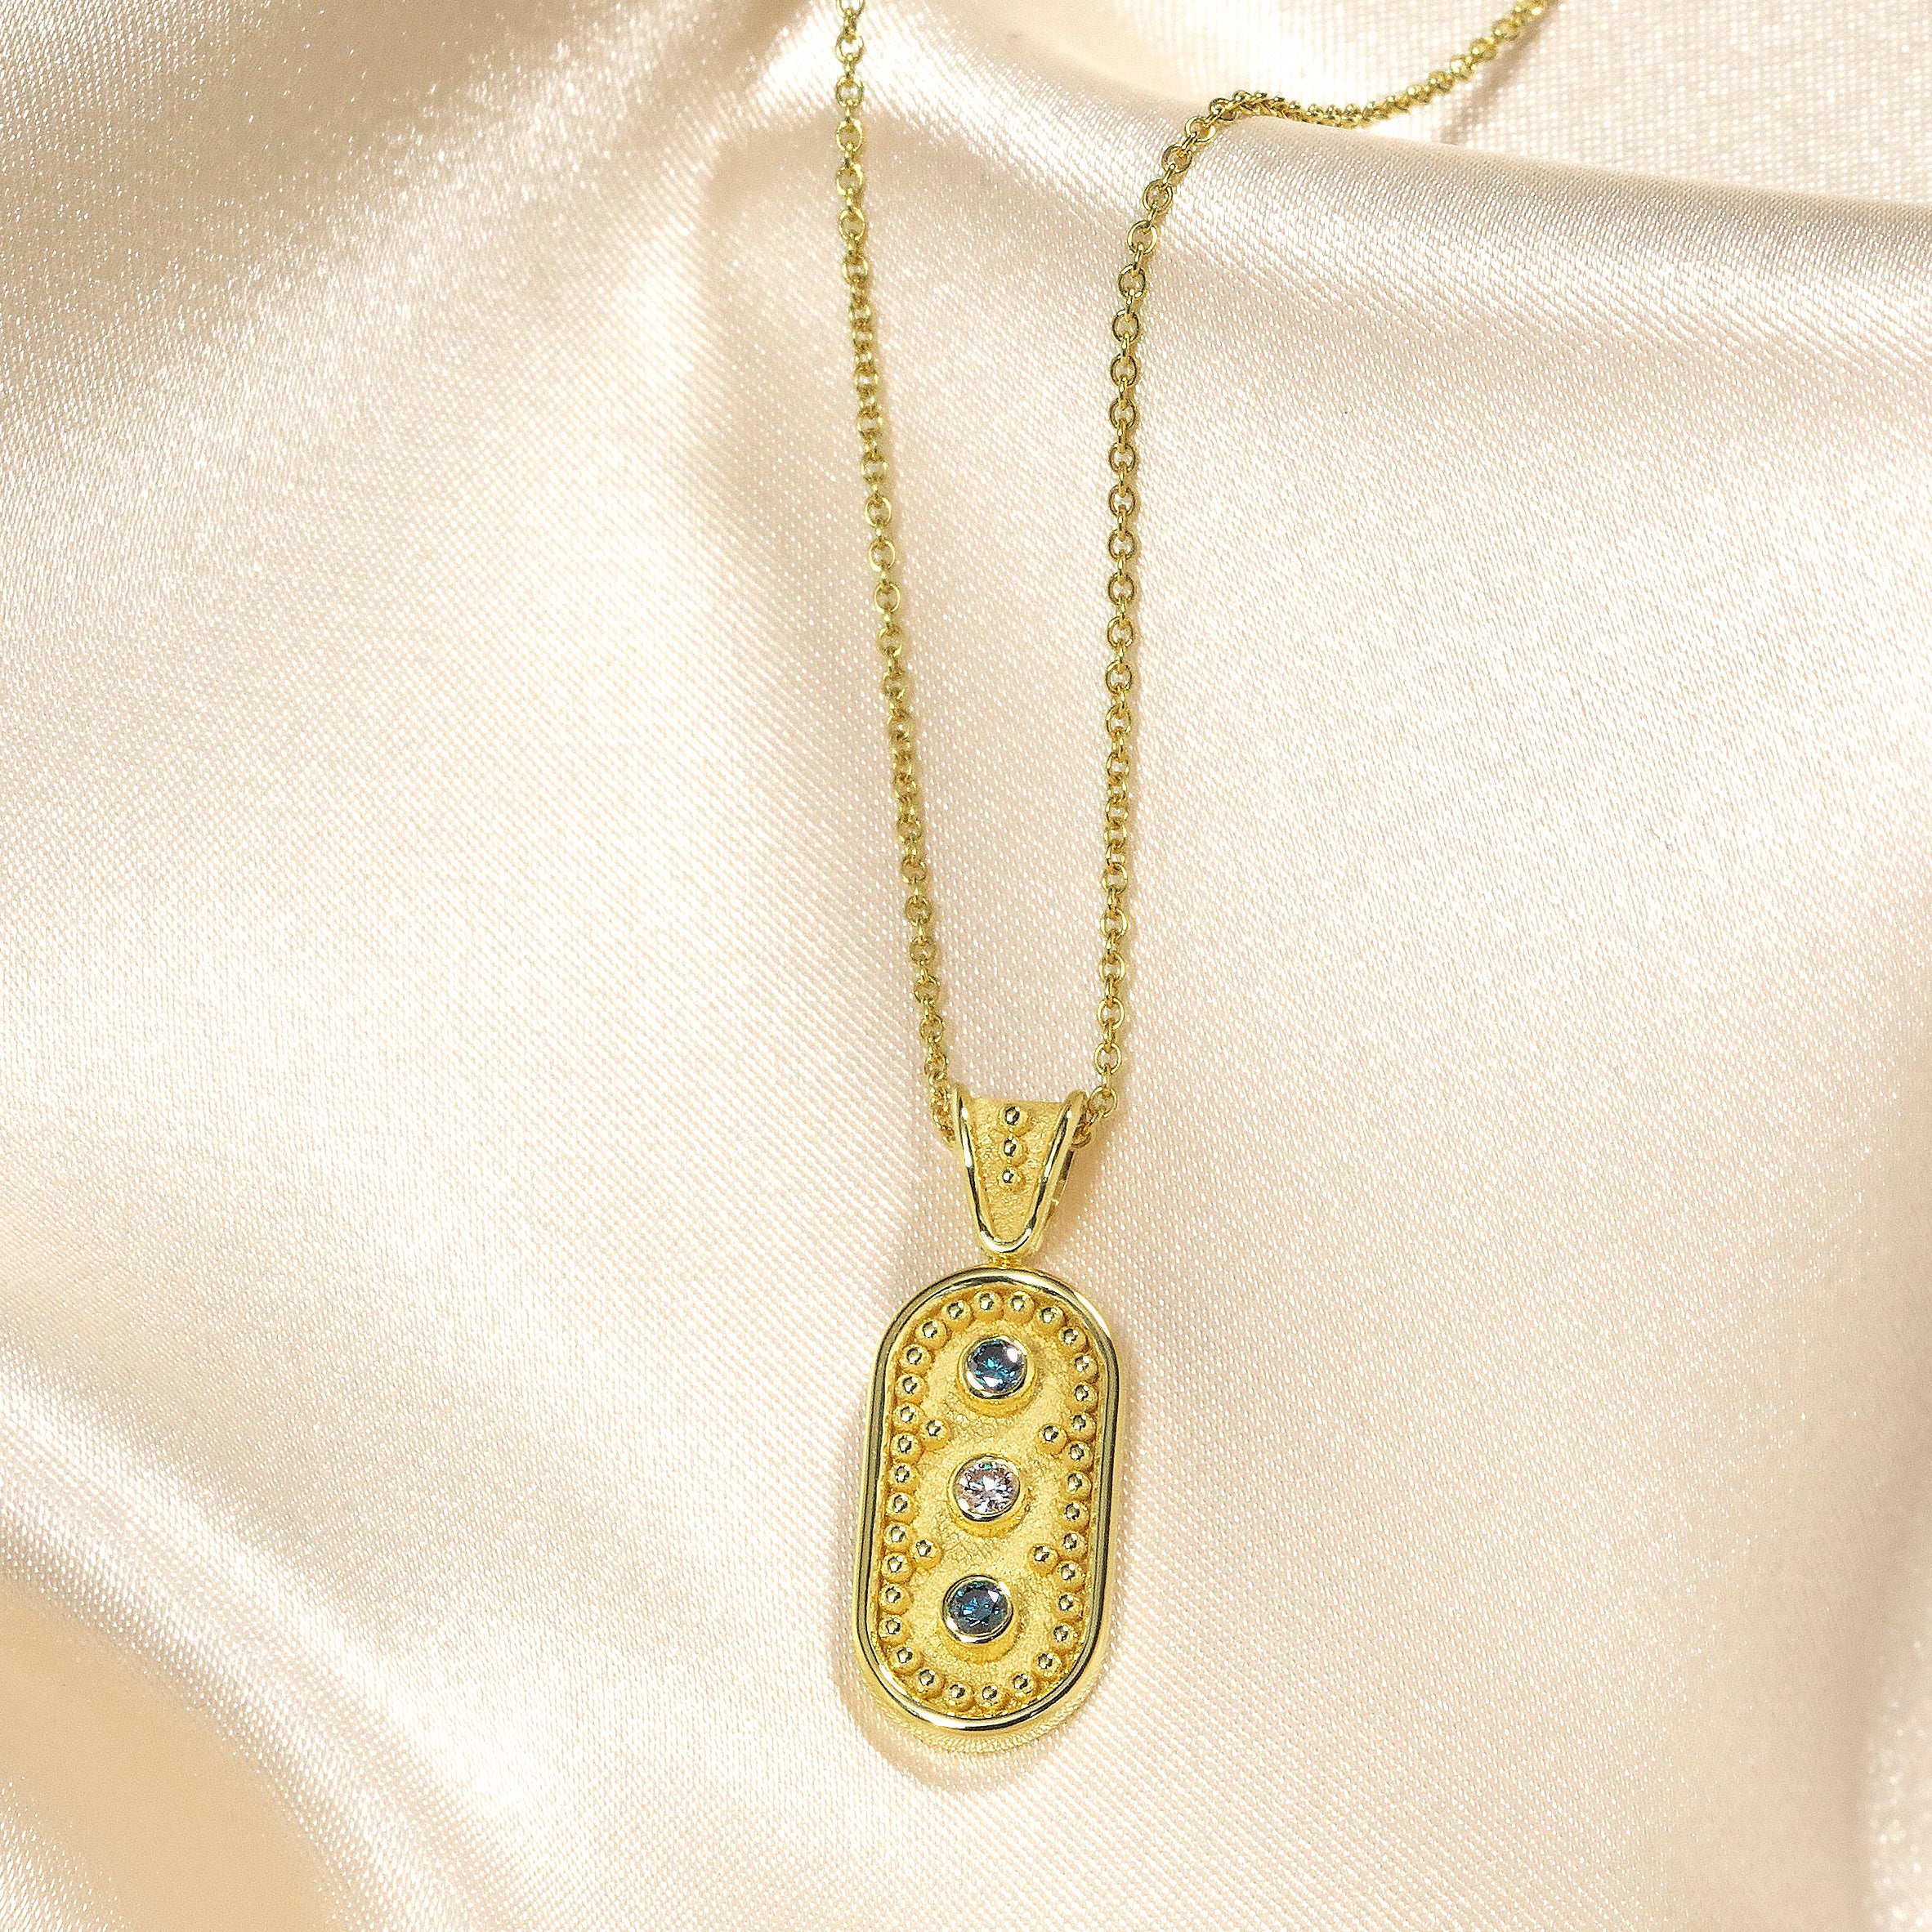 Byzantine Gold Pendant with Blue Diamonds Odysseus Jewelry